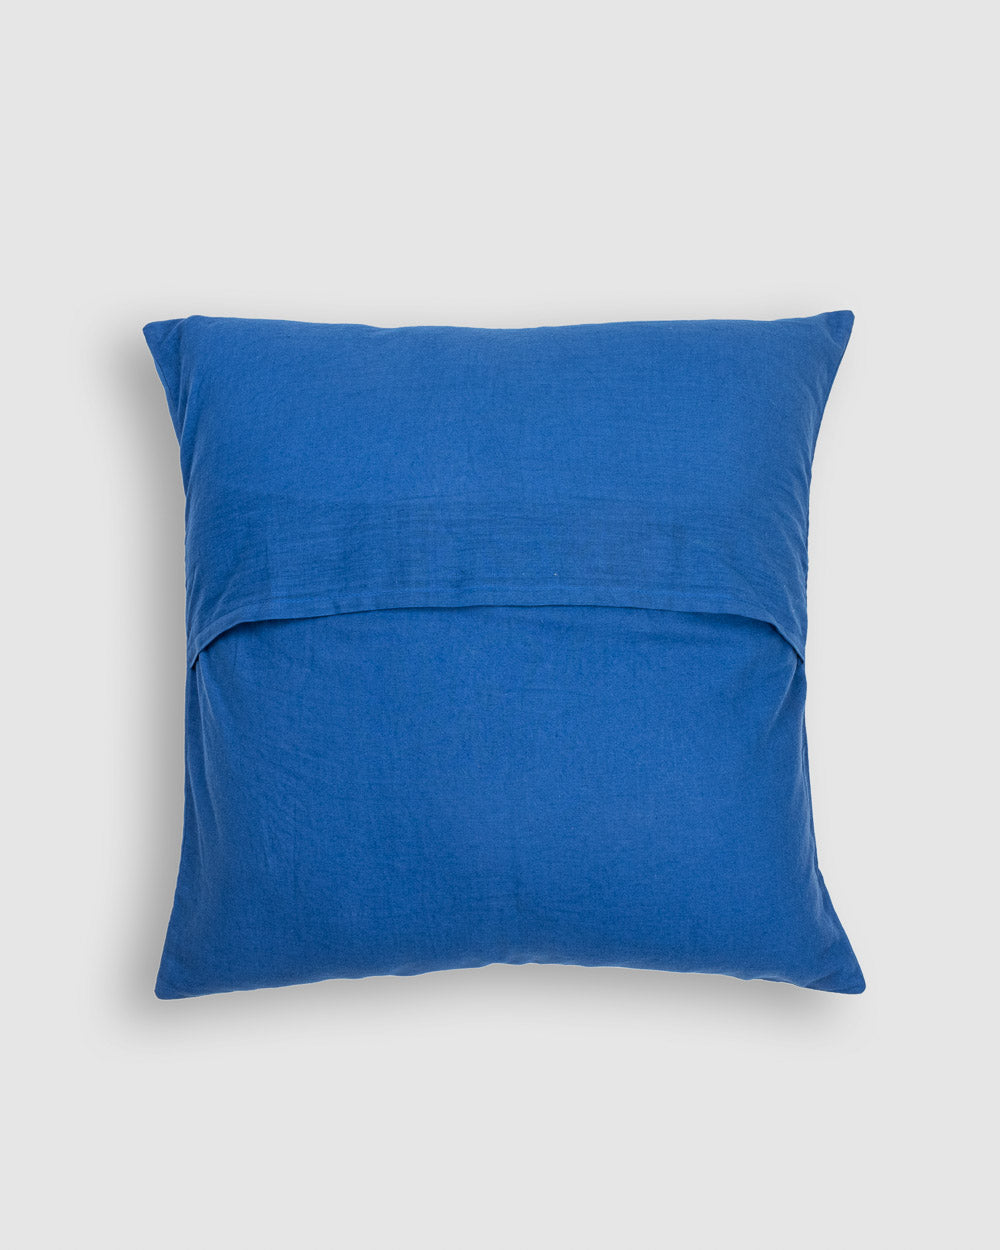 Cushion Cover Applique  Gulchand Design, Blue